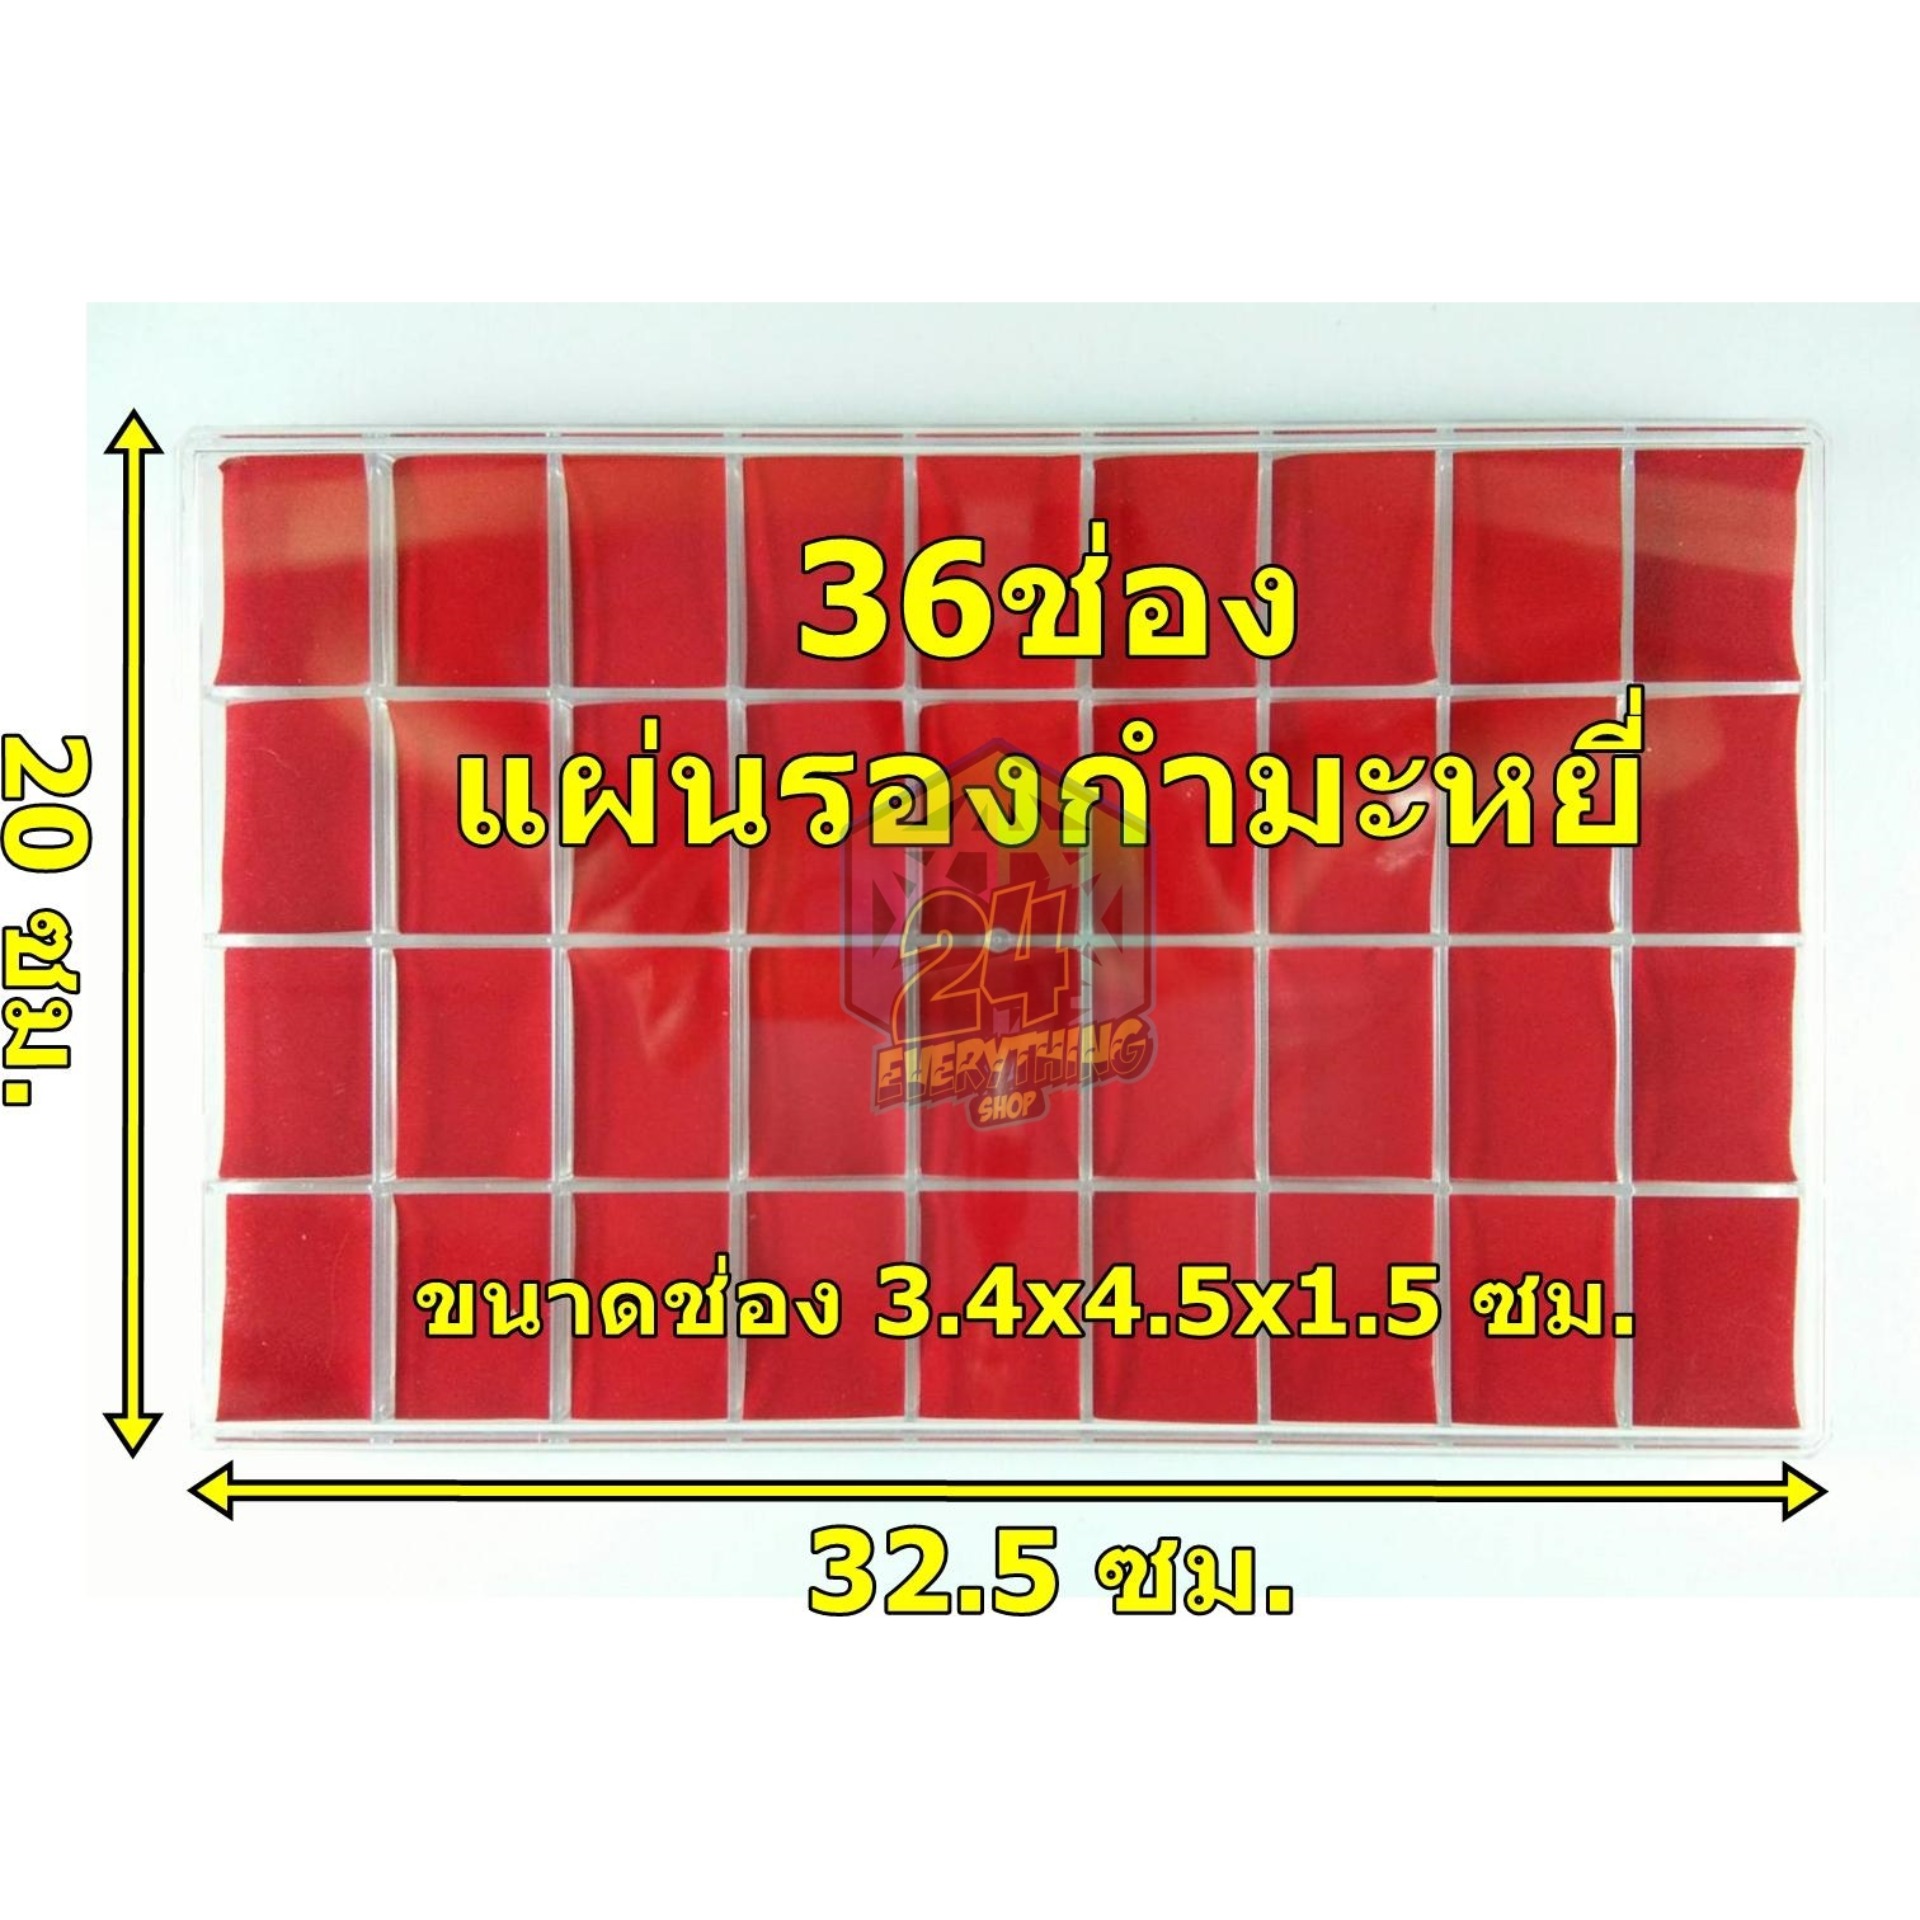 กล่องพระ36ช่อง รุ่นแผ่นรองกำมะหยี่สีแดง กล่องใส่ของสะสม กล่องเหรียญ กล่องสะสม กล่องแบ่งช่อง 20 x 32.5 cm (36ช่อง แผ่นรองกำมะหยี่)